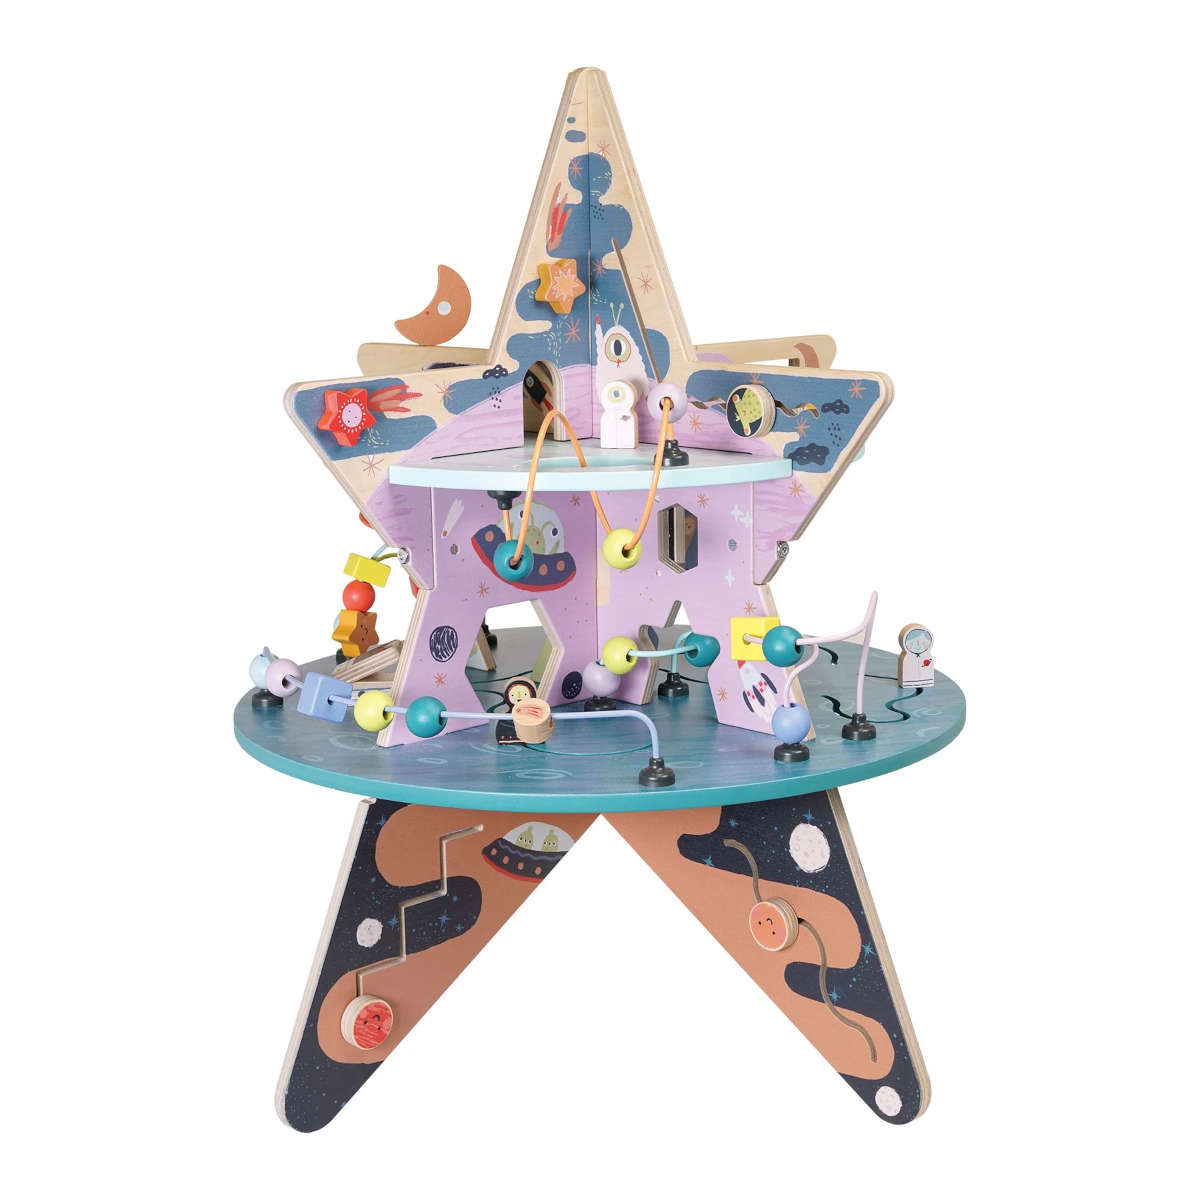 Manhattan Toy Company Celestial Star Explorer